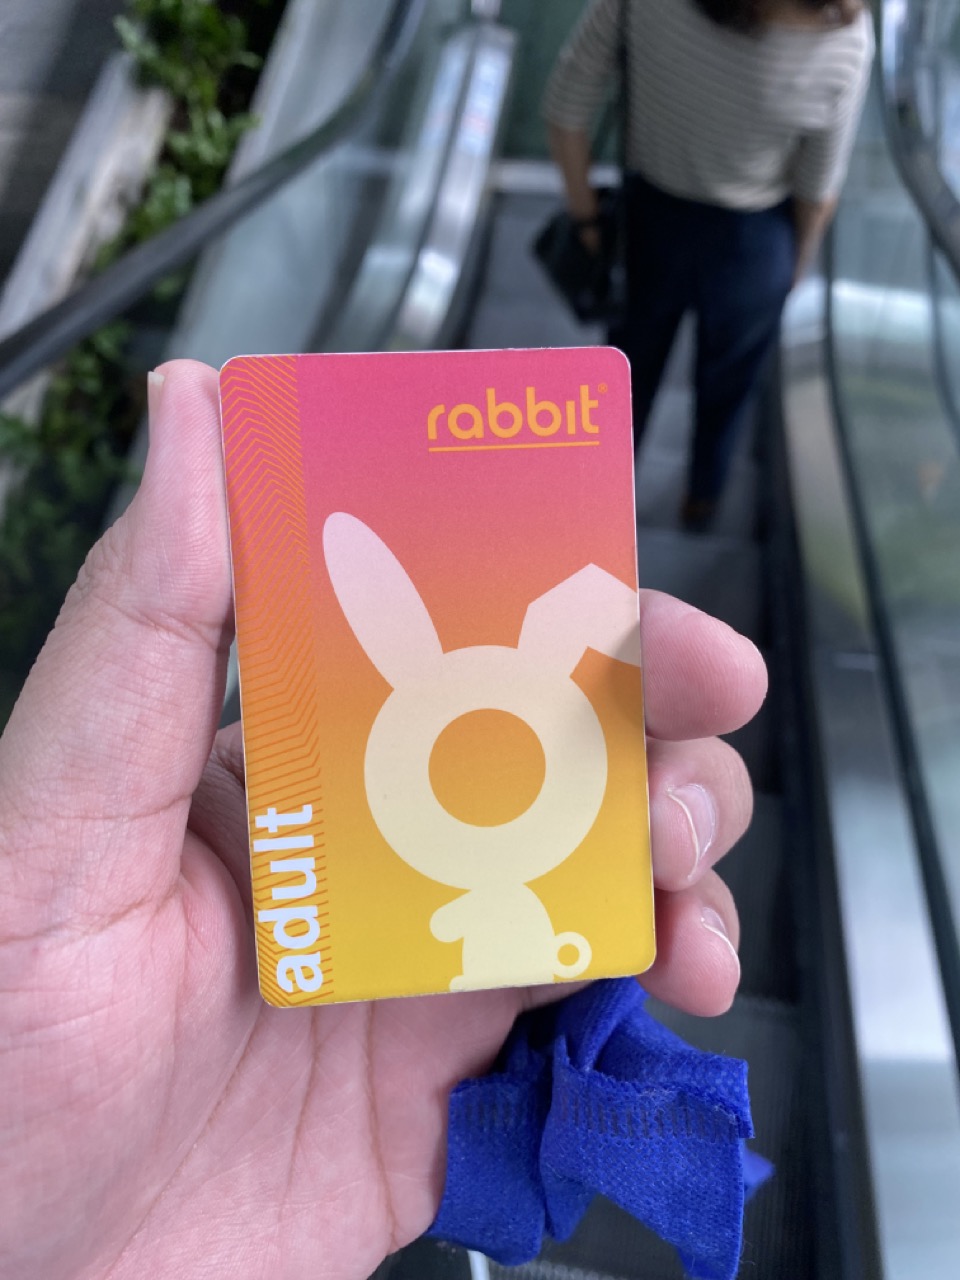 ตามหาเจ้าของบัตร Rabbit เก็บได้ที่ True Digital Park - Pantip